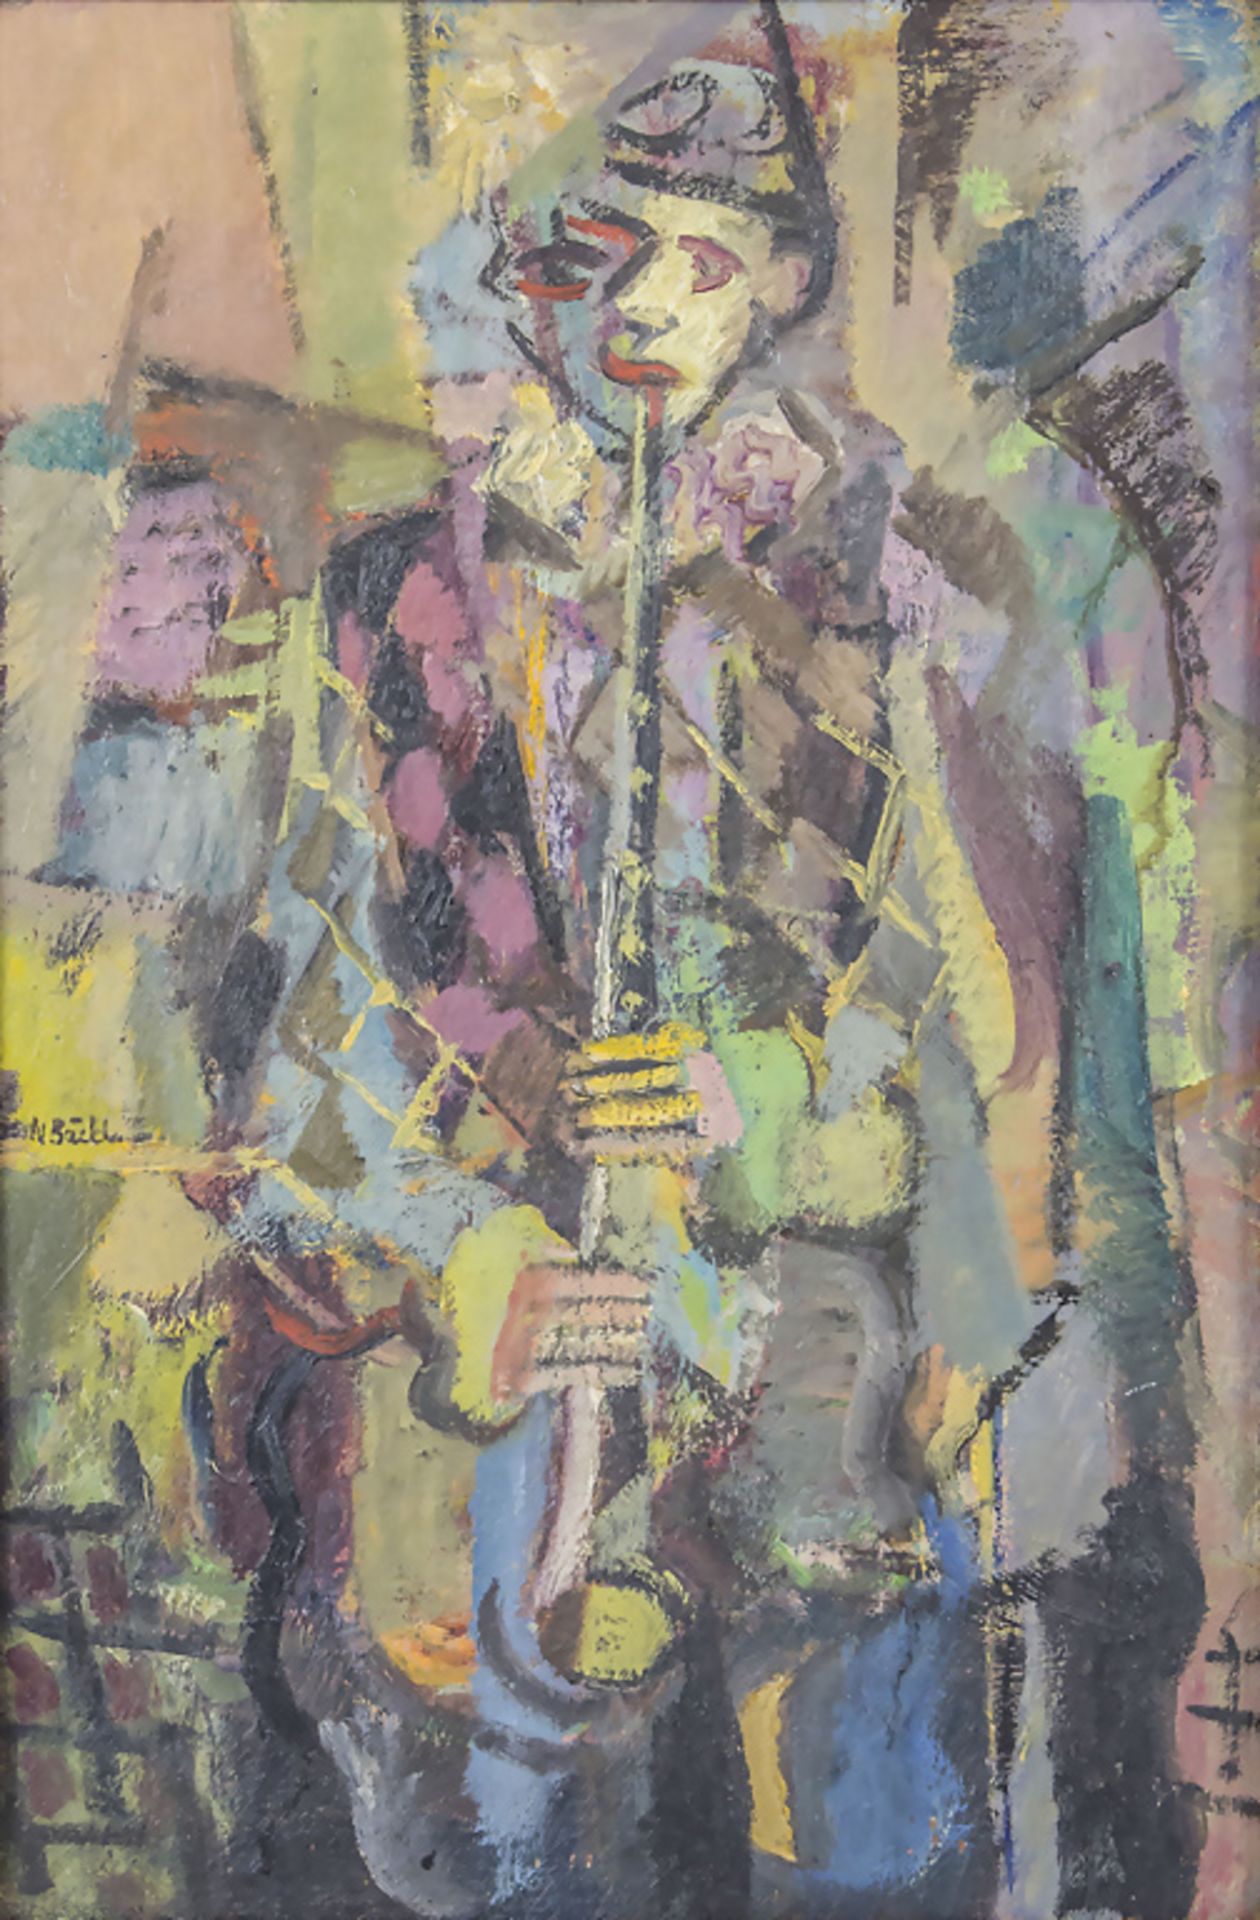 Nils BÄCKLIN (1913-1989), 'Klarinette spielender Harlekin' / 'A clarinet playing harlequin'